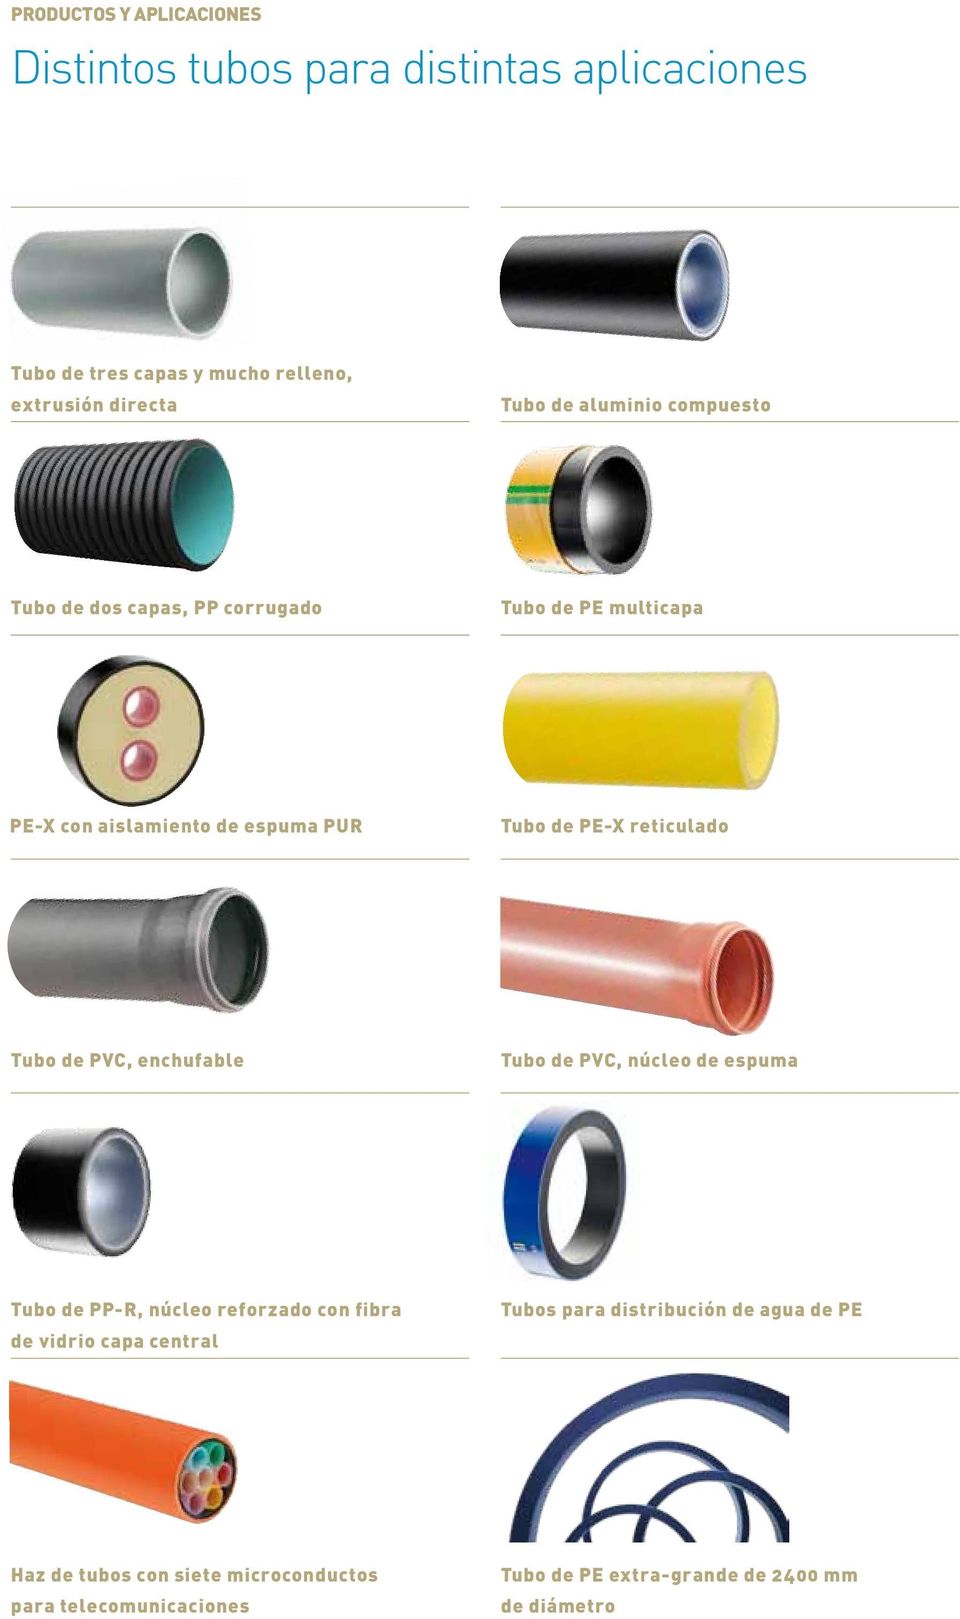 Tubo de PVC, enchufable Tubo de PVC, núcleo de espuma Tubo de PP-R, núcleo reforzado con fibra de vidrio capa central Tubos para